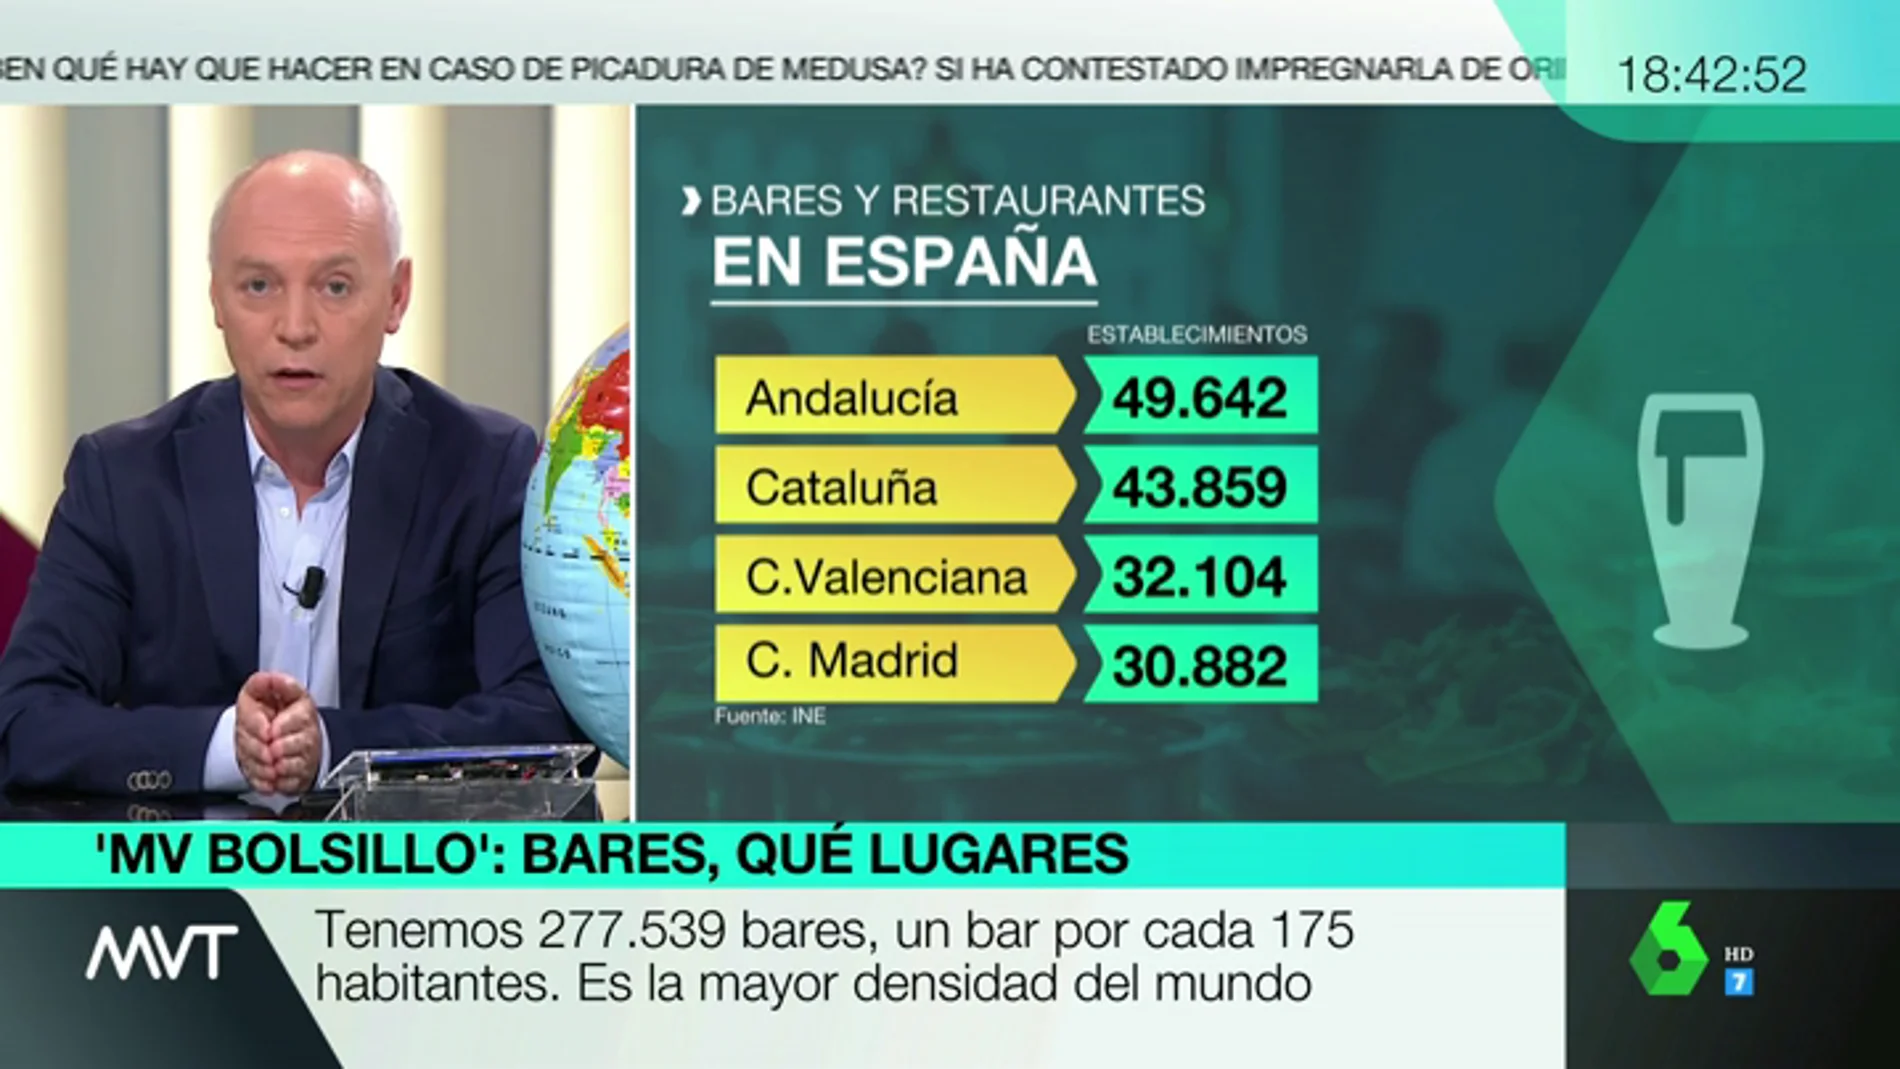 España es el líder mundial absoluto en número de bares y restaurantes: un establecimiento por cada 175 habitantes